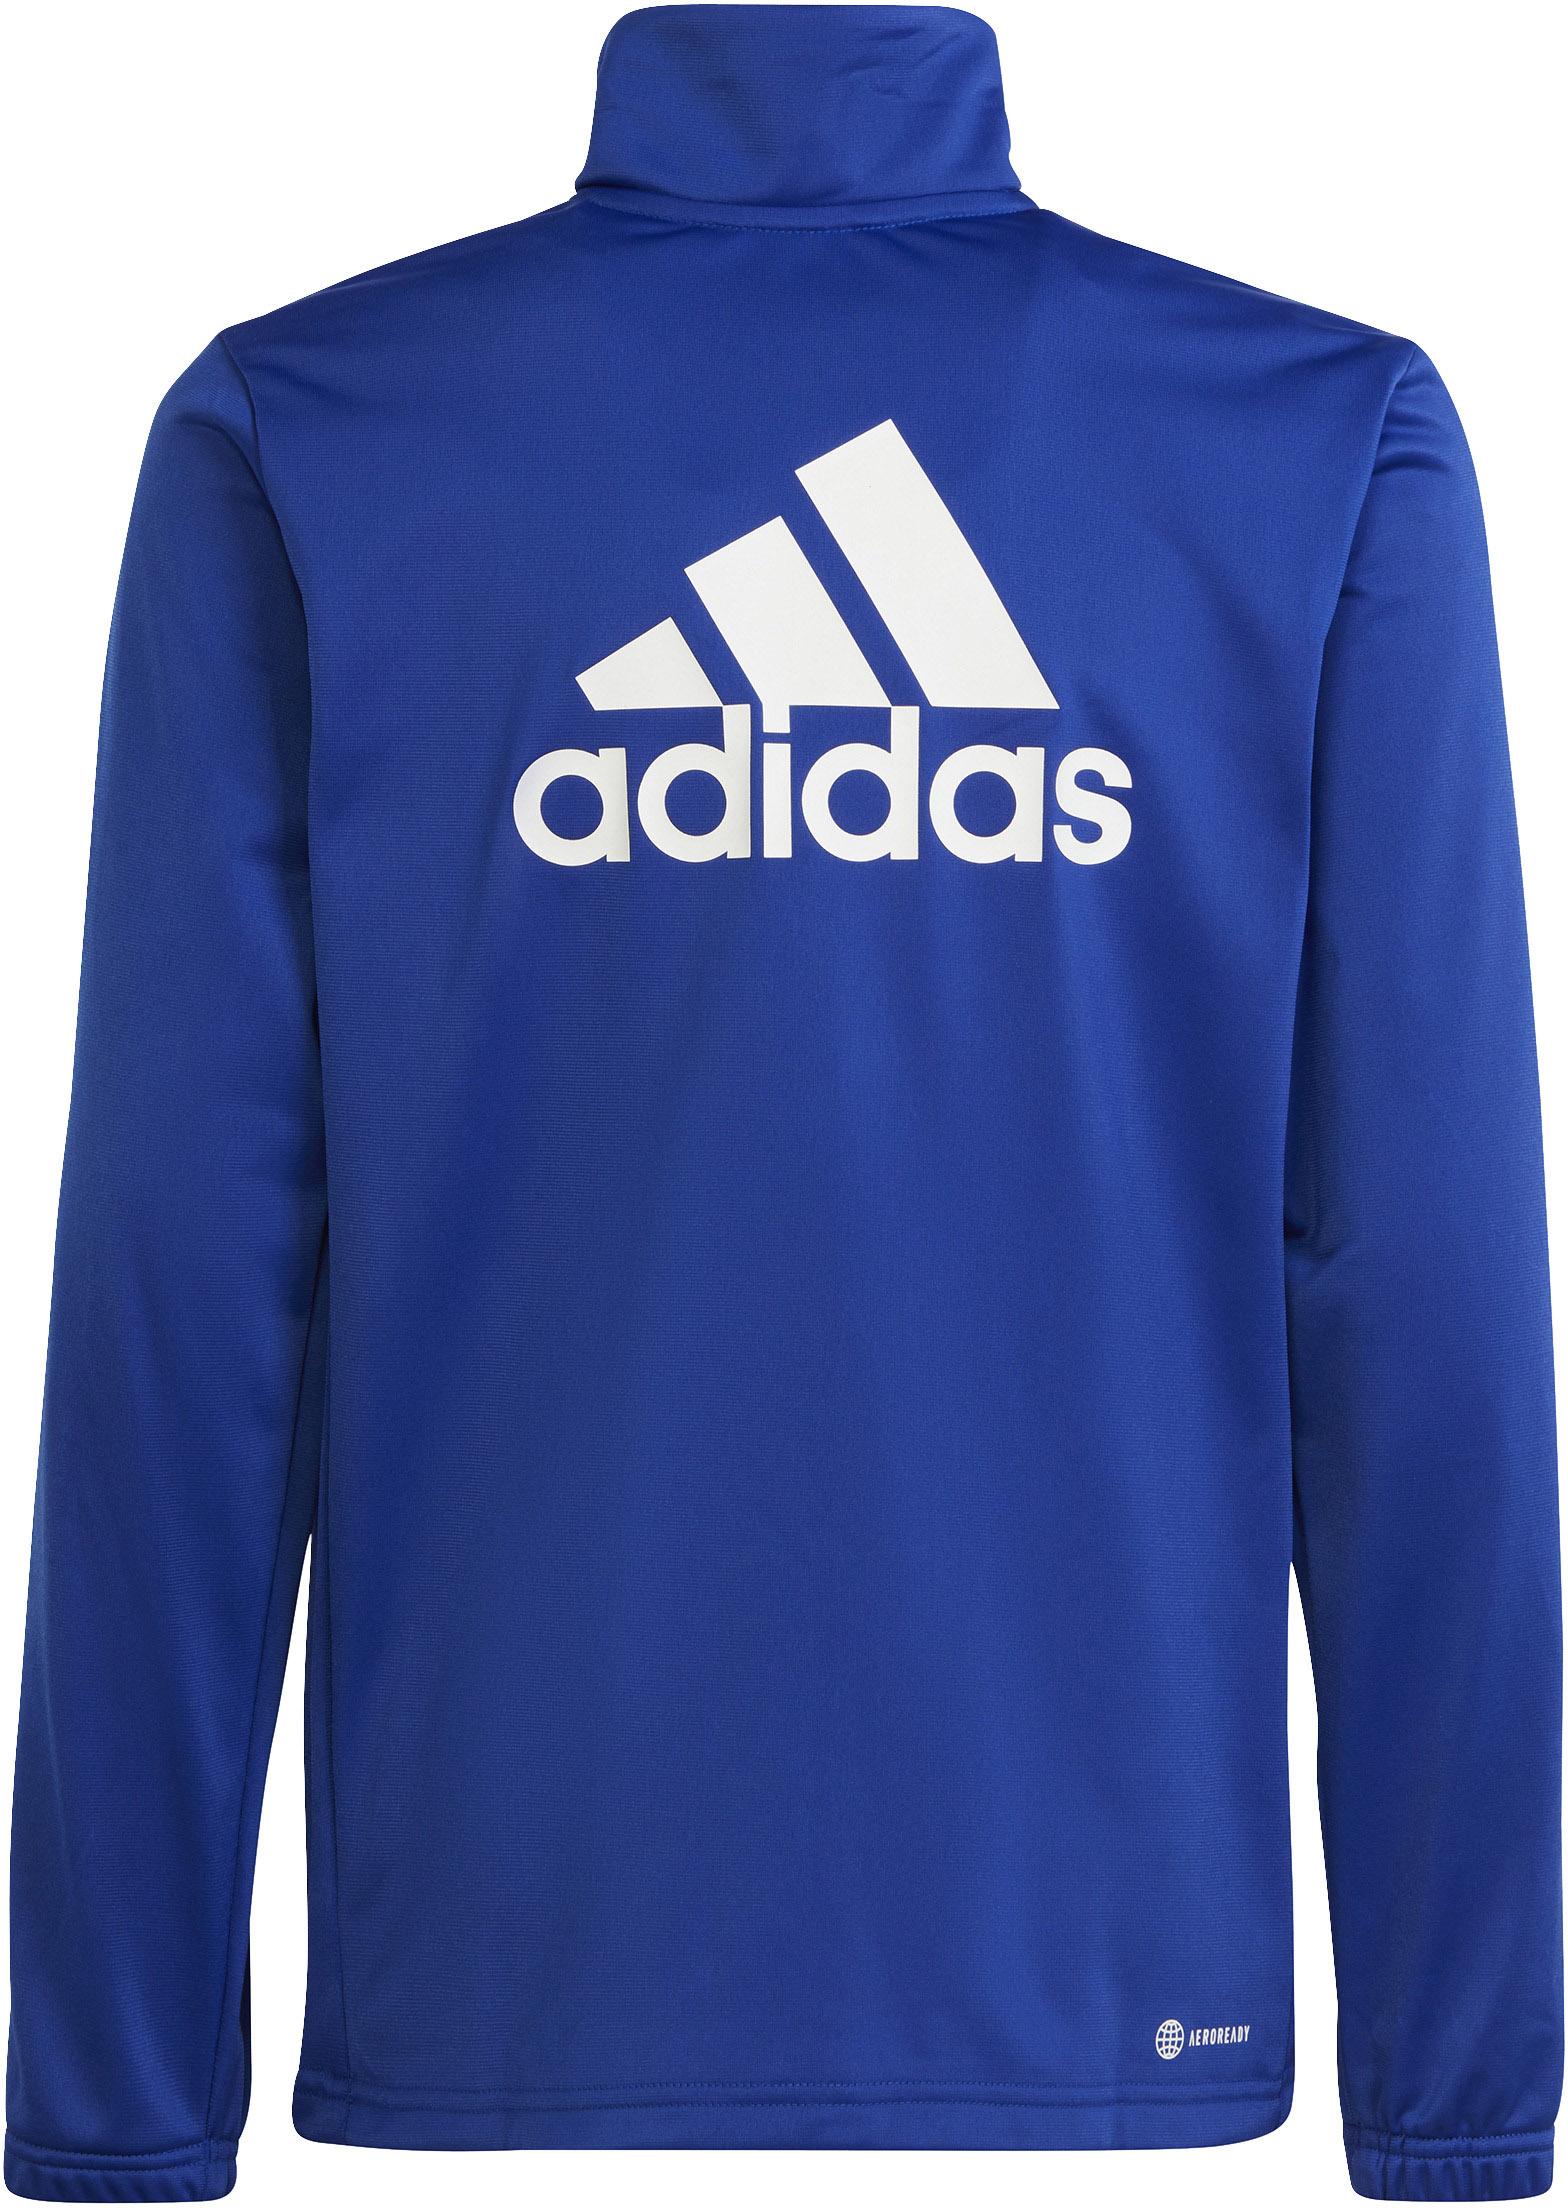 Adidas Trainingsanzug Jungen semi lucid SportScheck ink kaufen Online von blue-white-legend Shop im